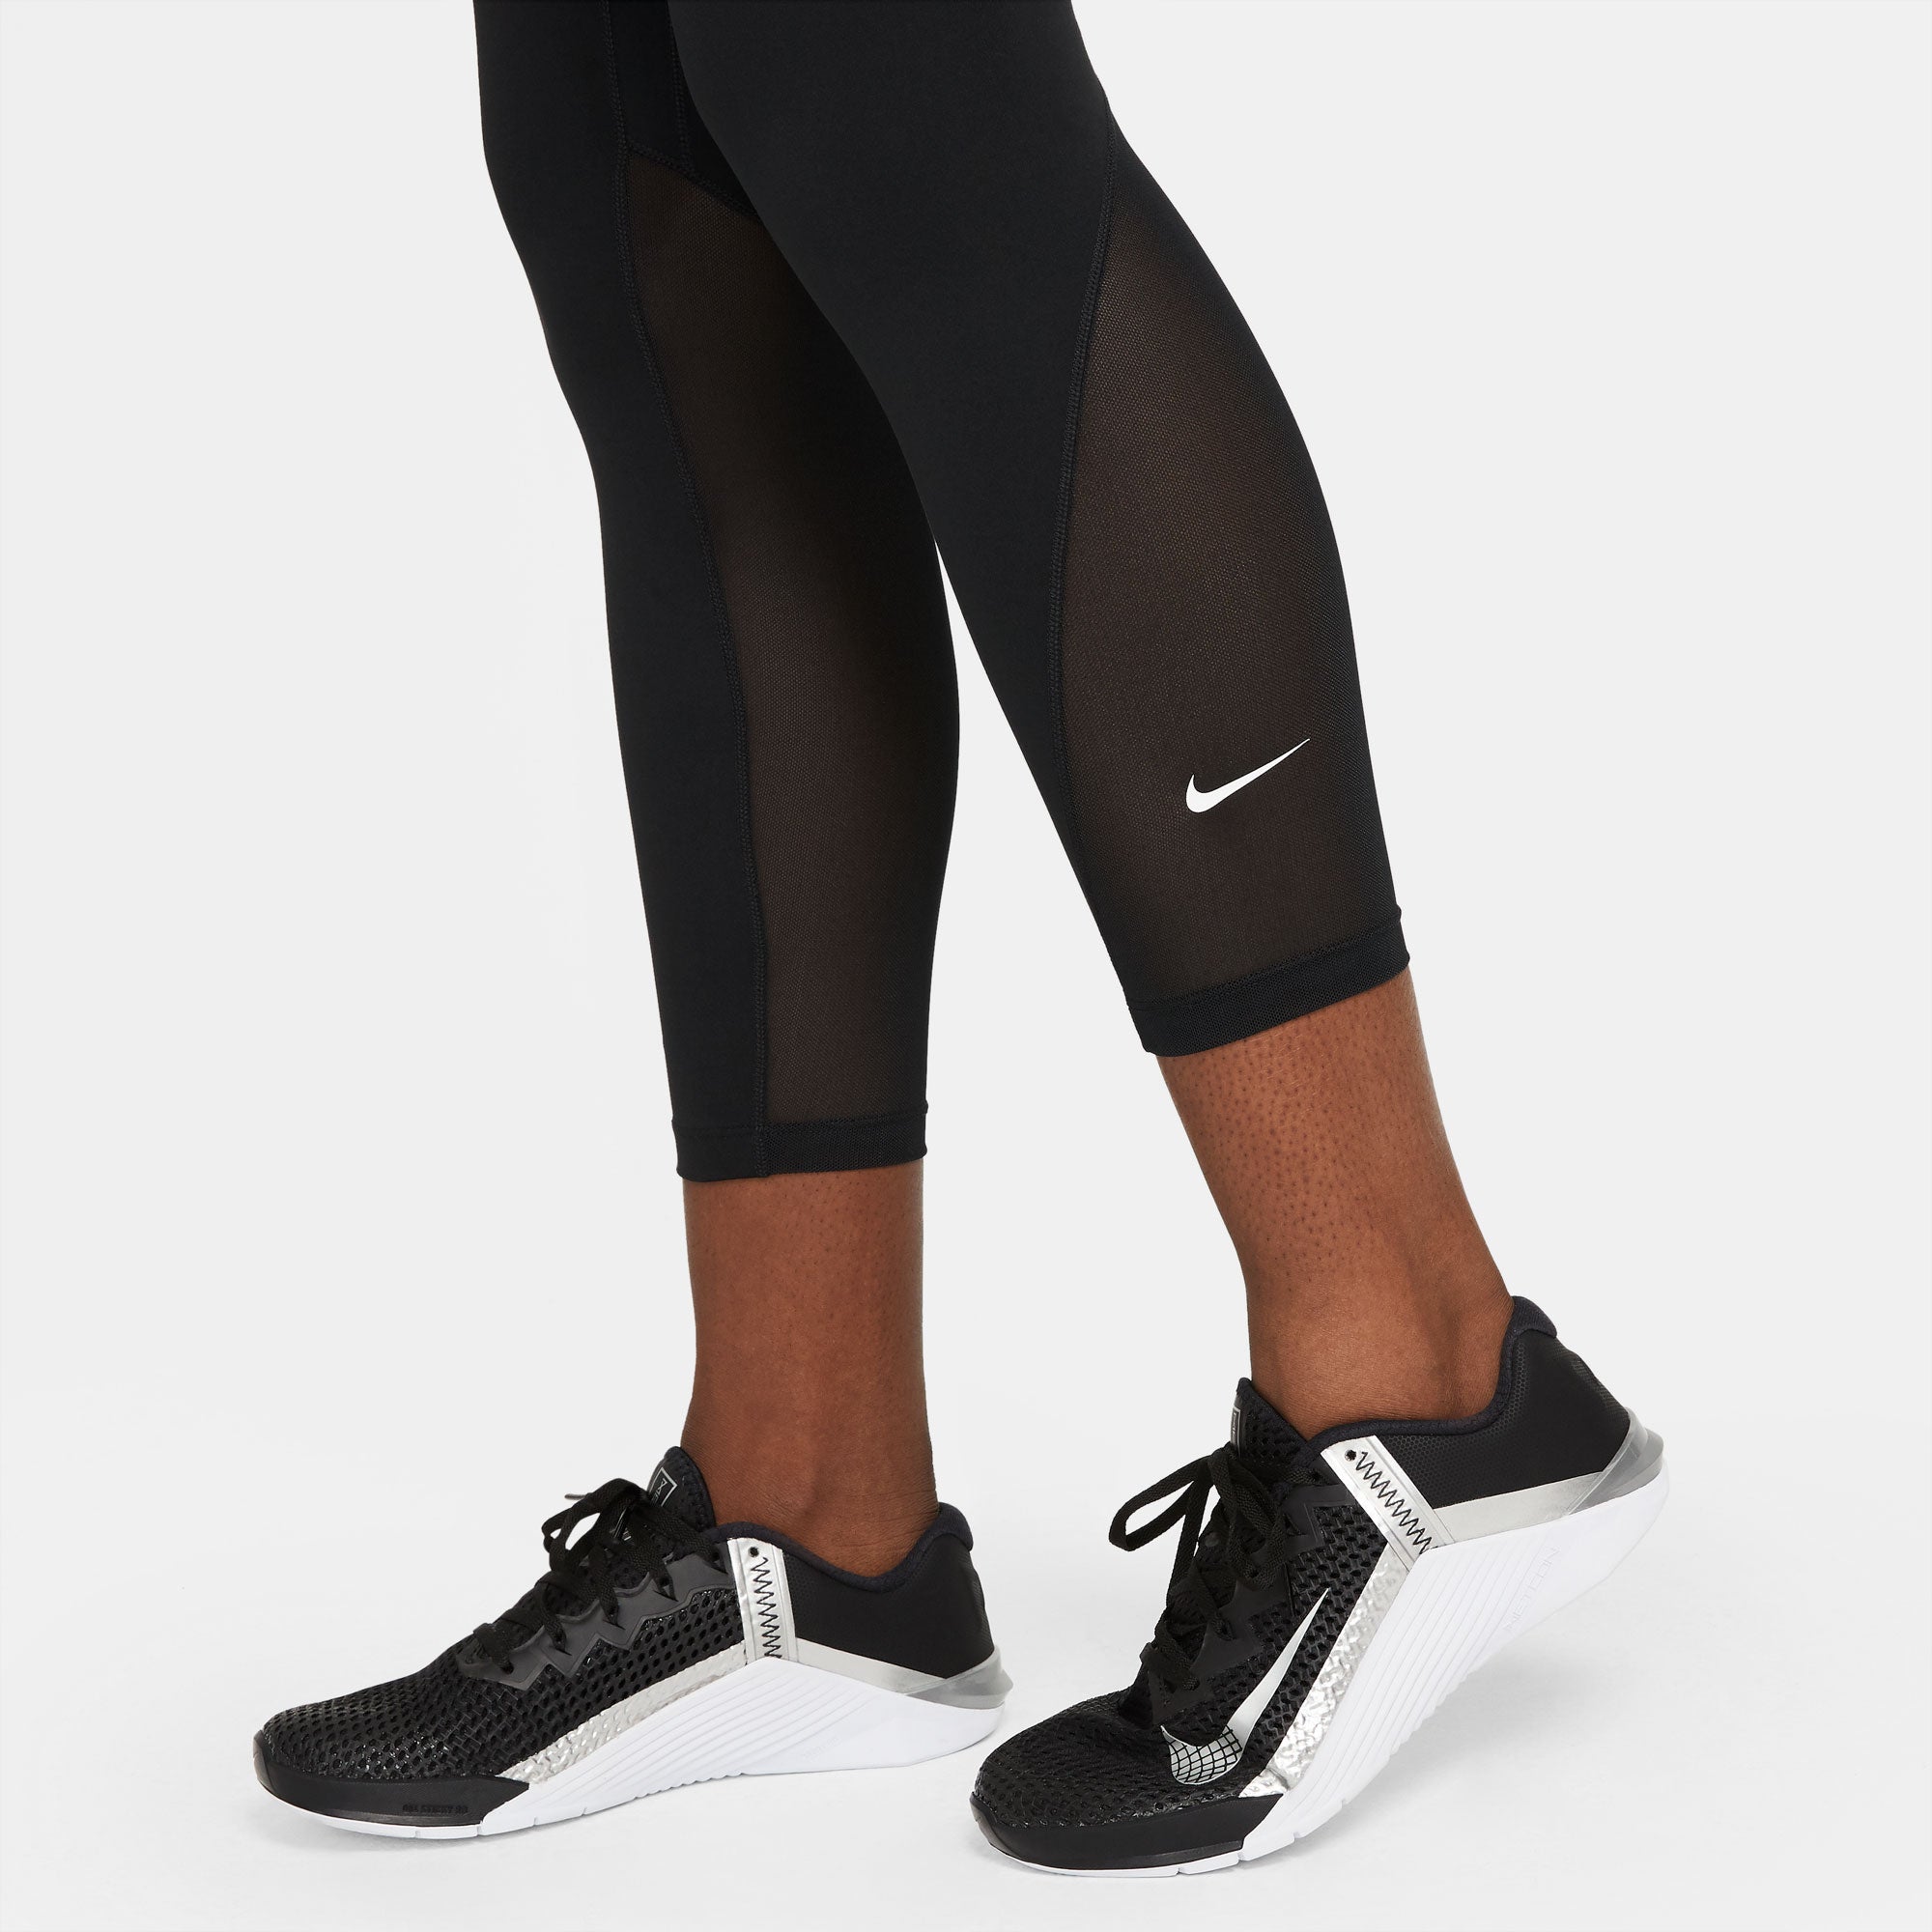 Nike One Dri-FIT Women's Mid-Rise 7/8 Tights Black (5)Nike One Dri-FIT Women's Mid-Rise 7/8 Leggings Black (5)